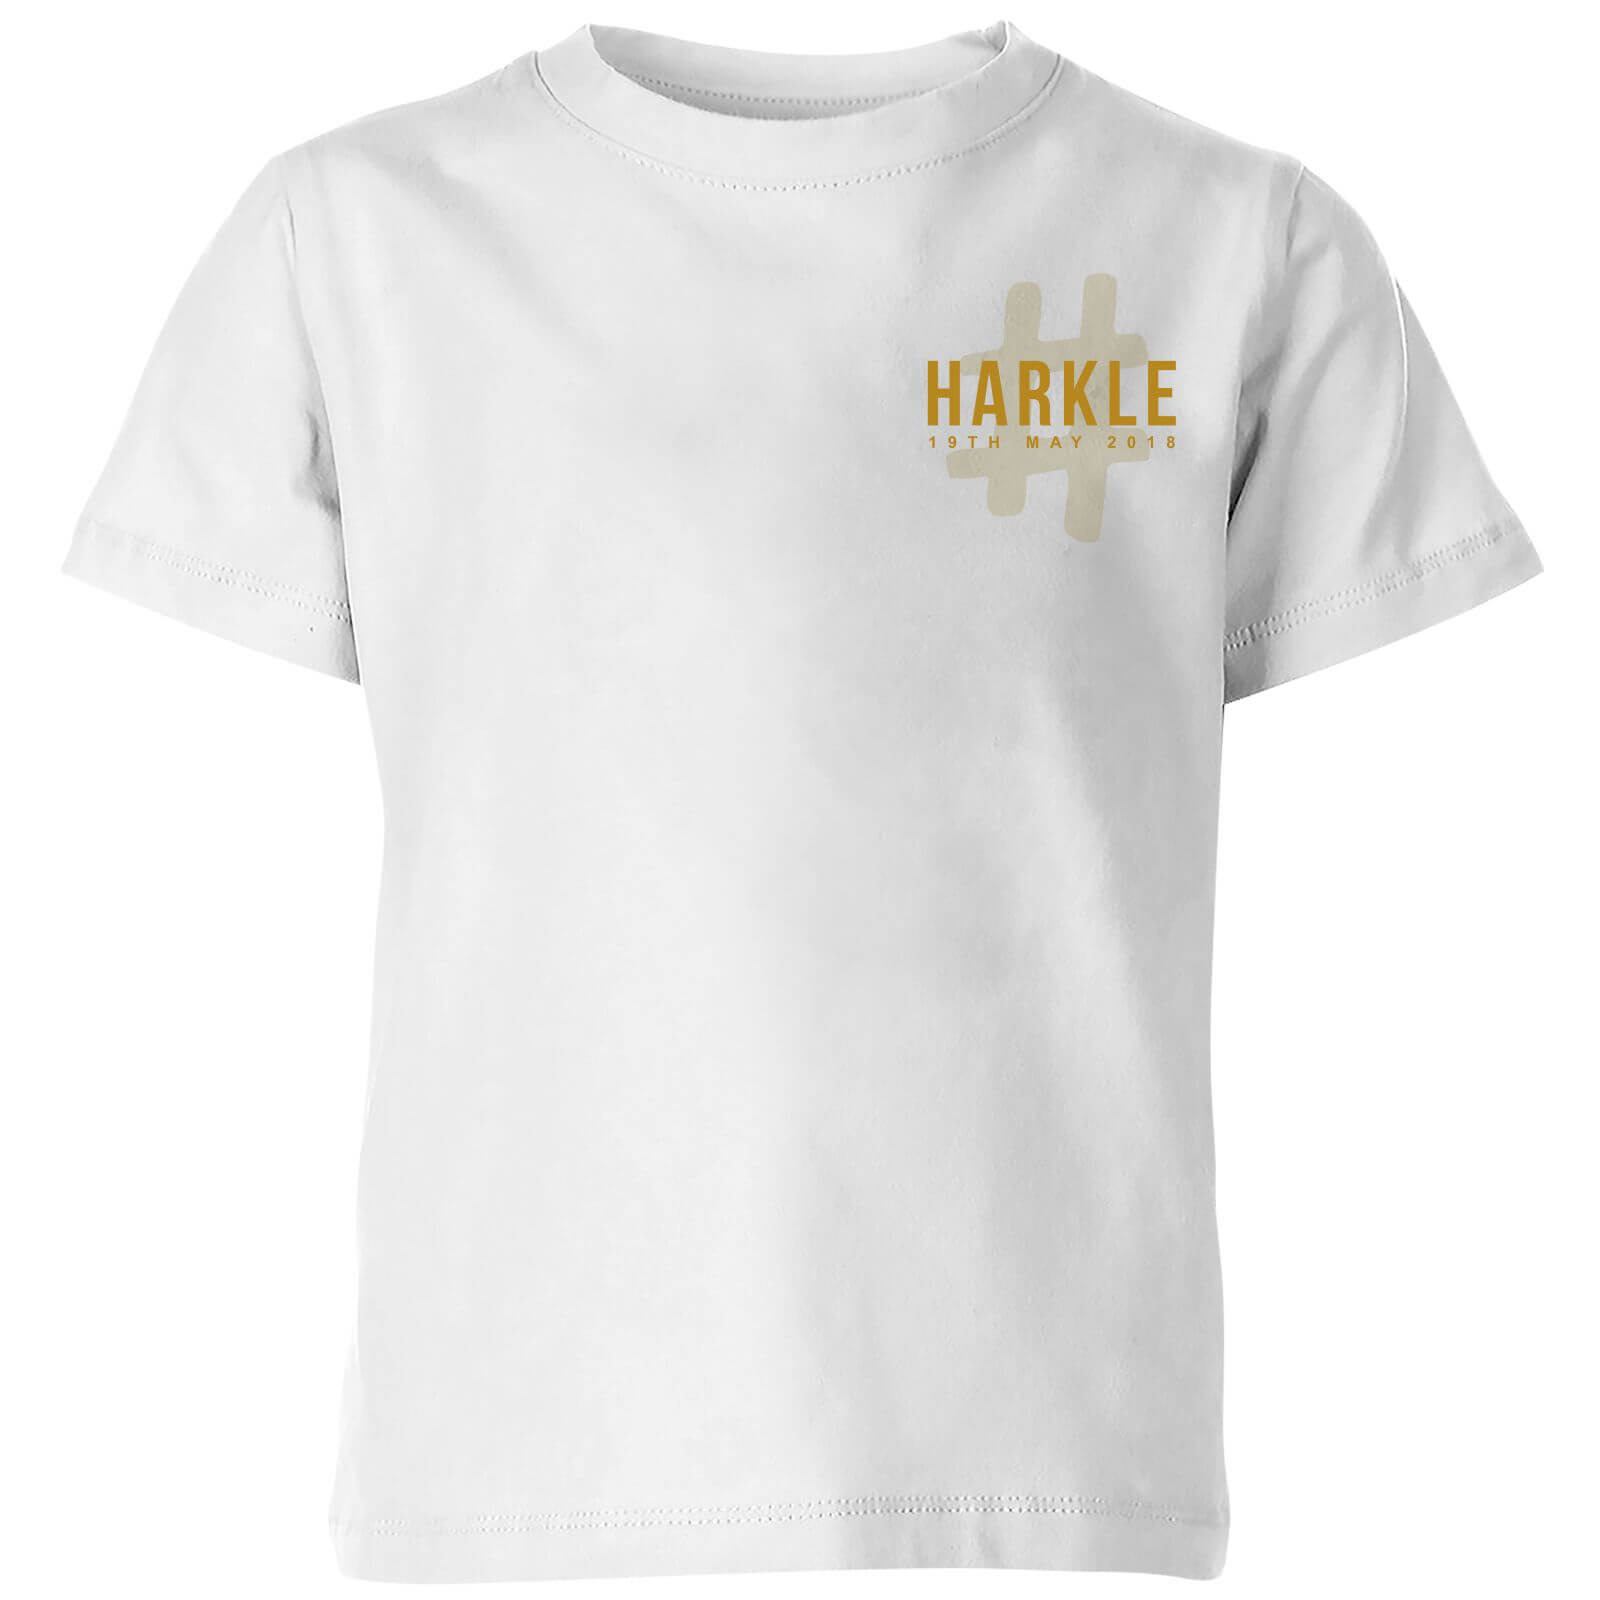 #Harkle Kids' T-Shirt - White - 11-12 Years - White